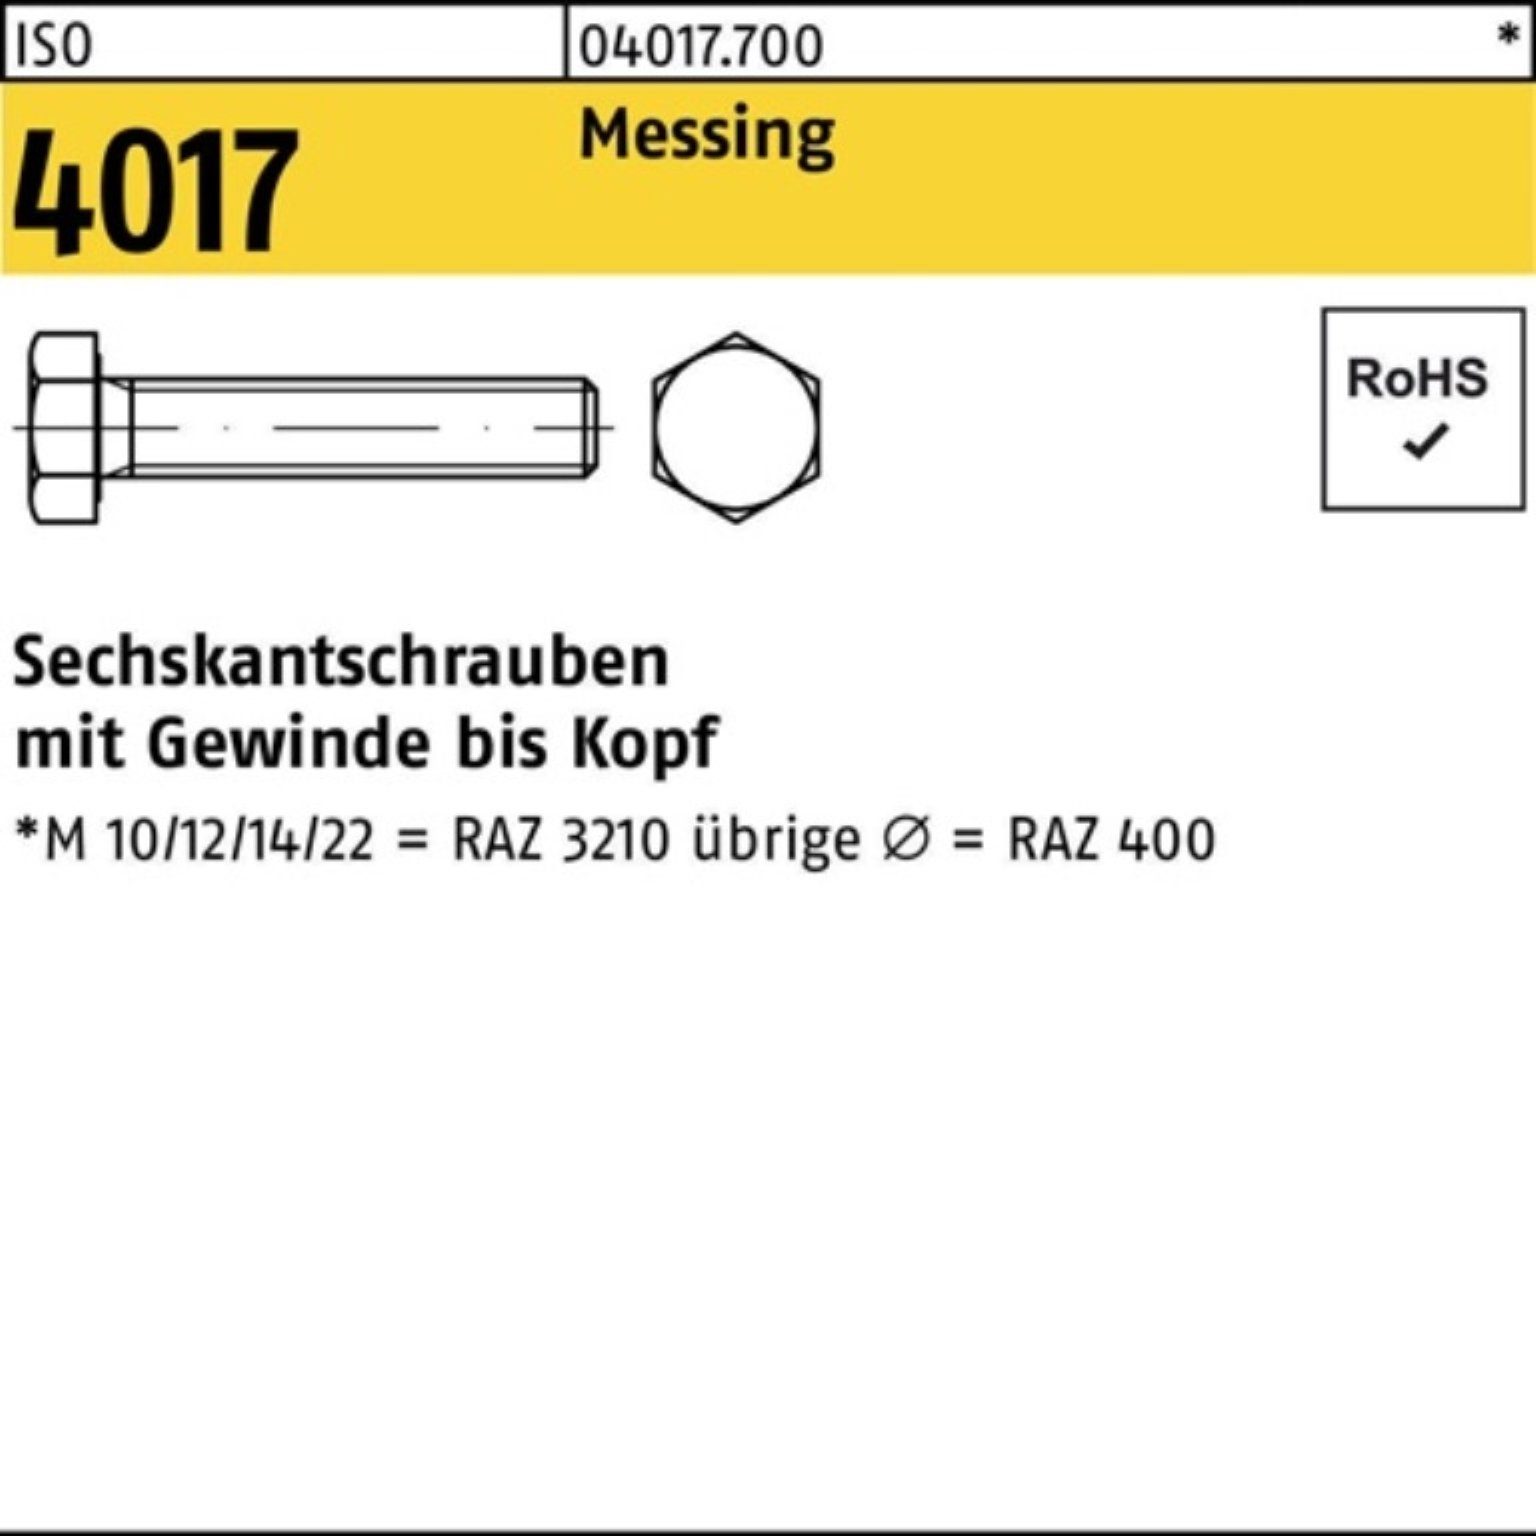 Bufab Sechskantschraube 100er Pack Sechskantschraube 10 ISO 50 Stück Messing VG 4017 M20x ISO